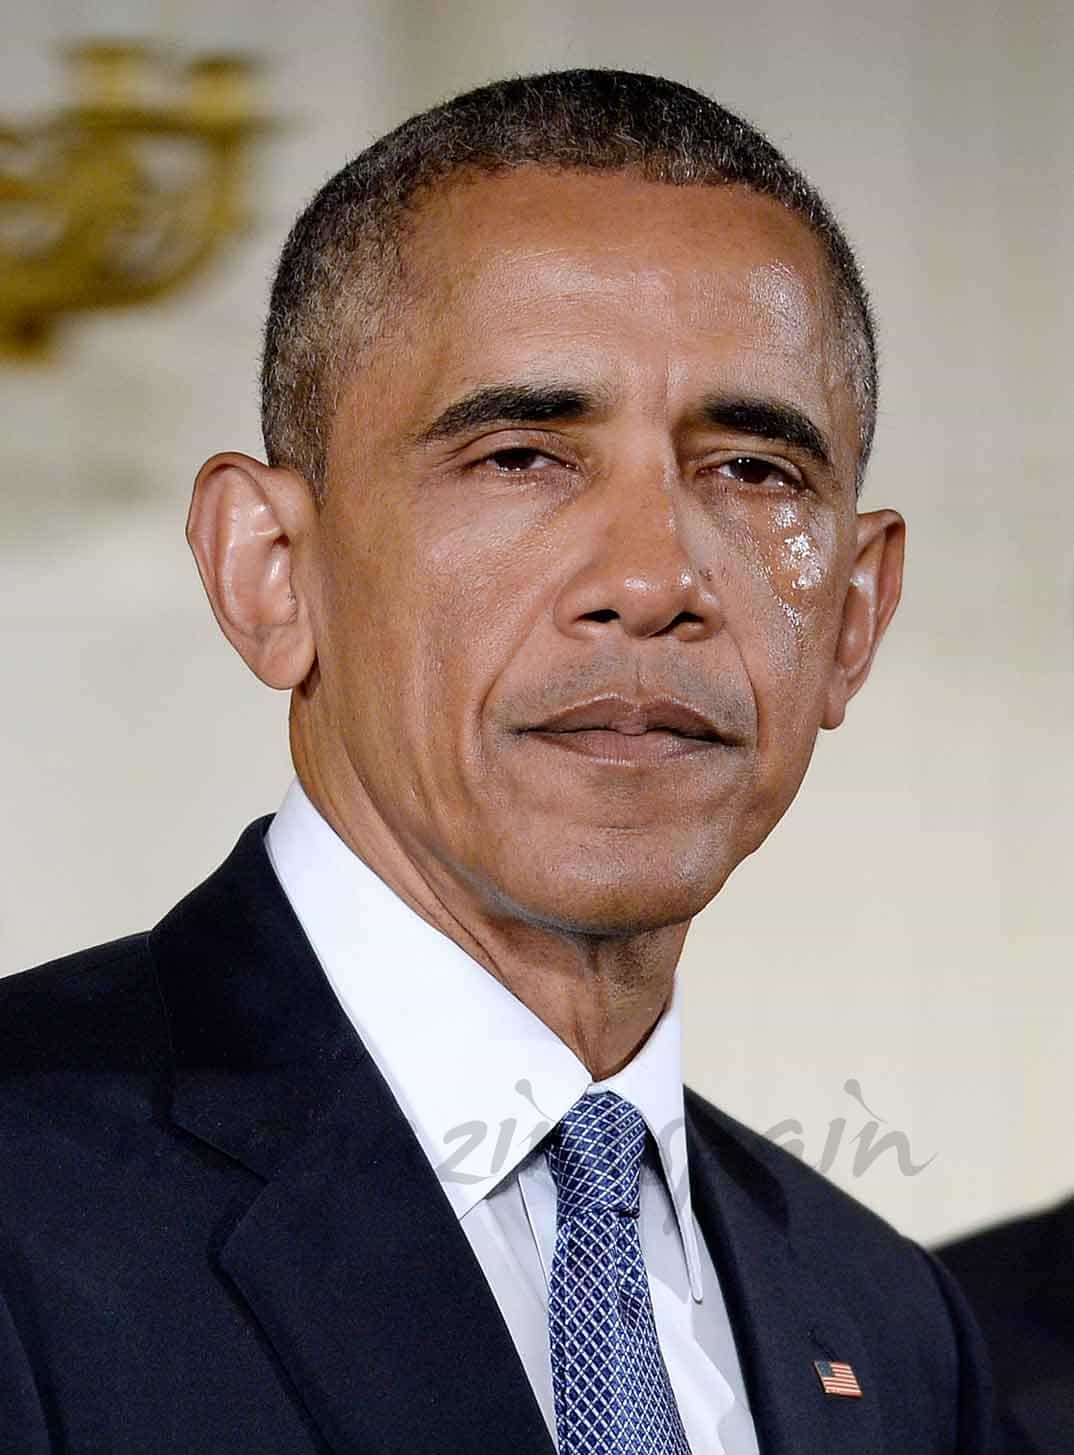 el llanto del presidente obama